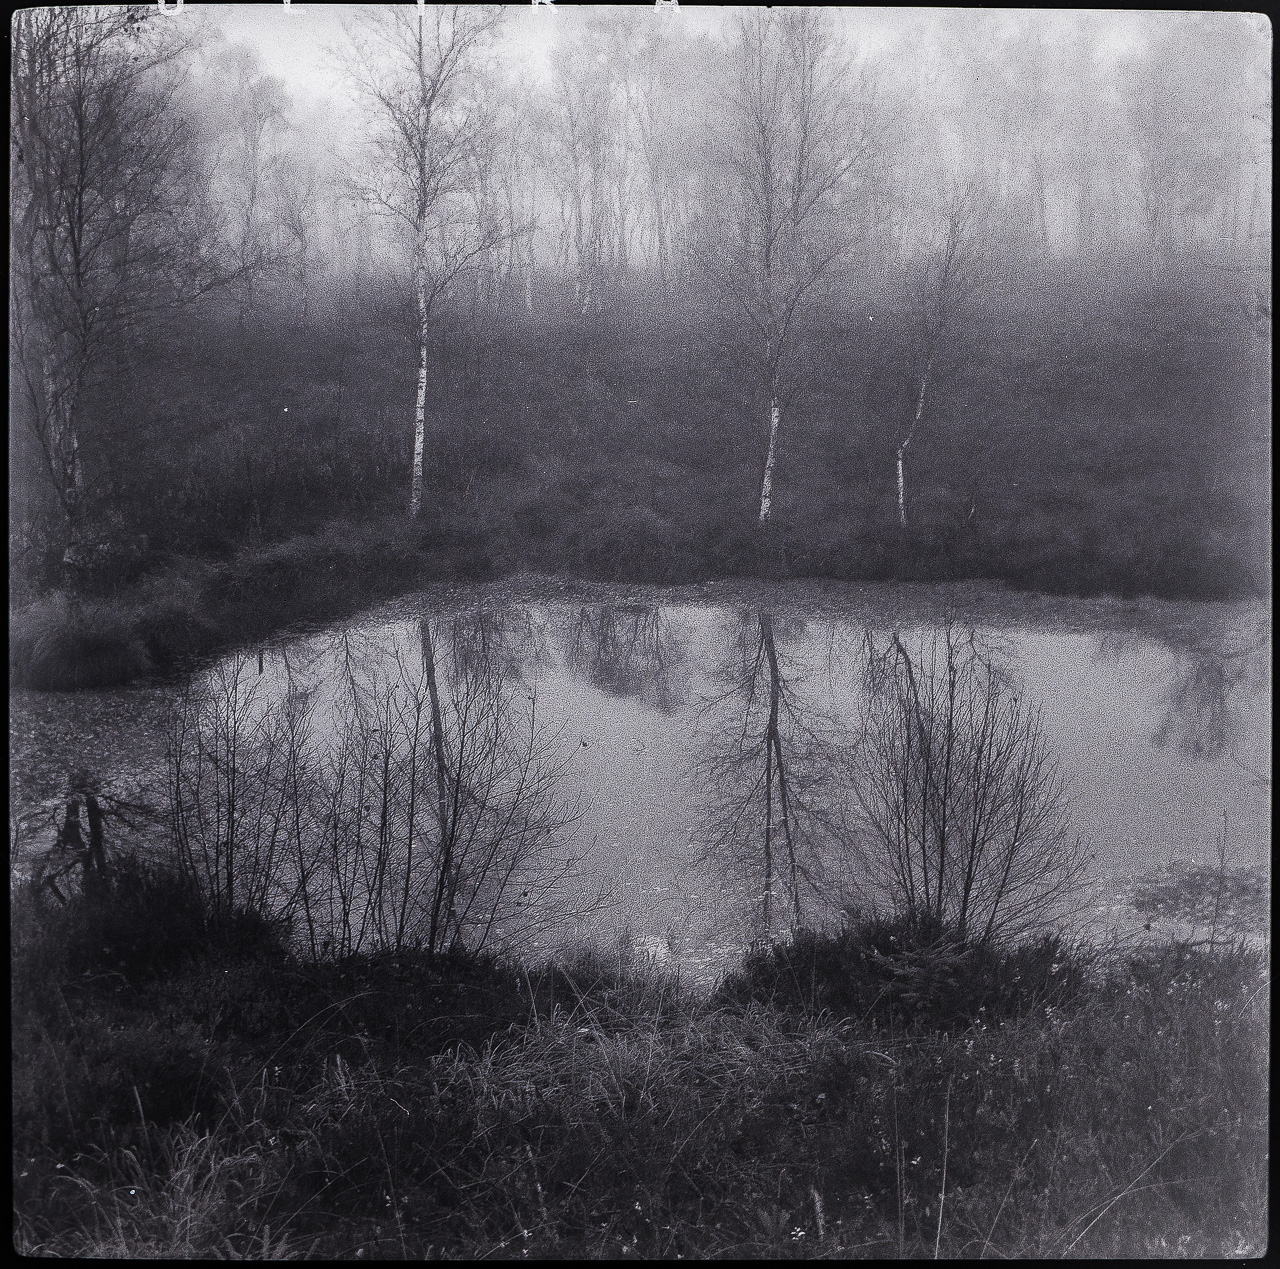 Quadratisches SchwarzWeißFoto: Birken am Ufer eines kleinen Teichs in einem Moor